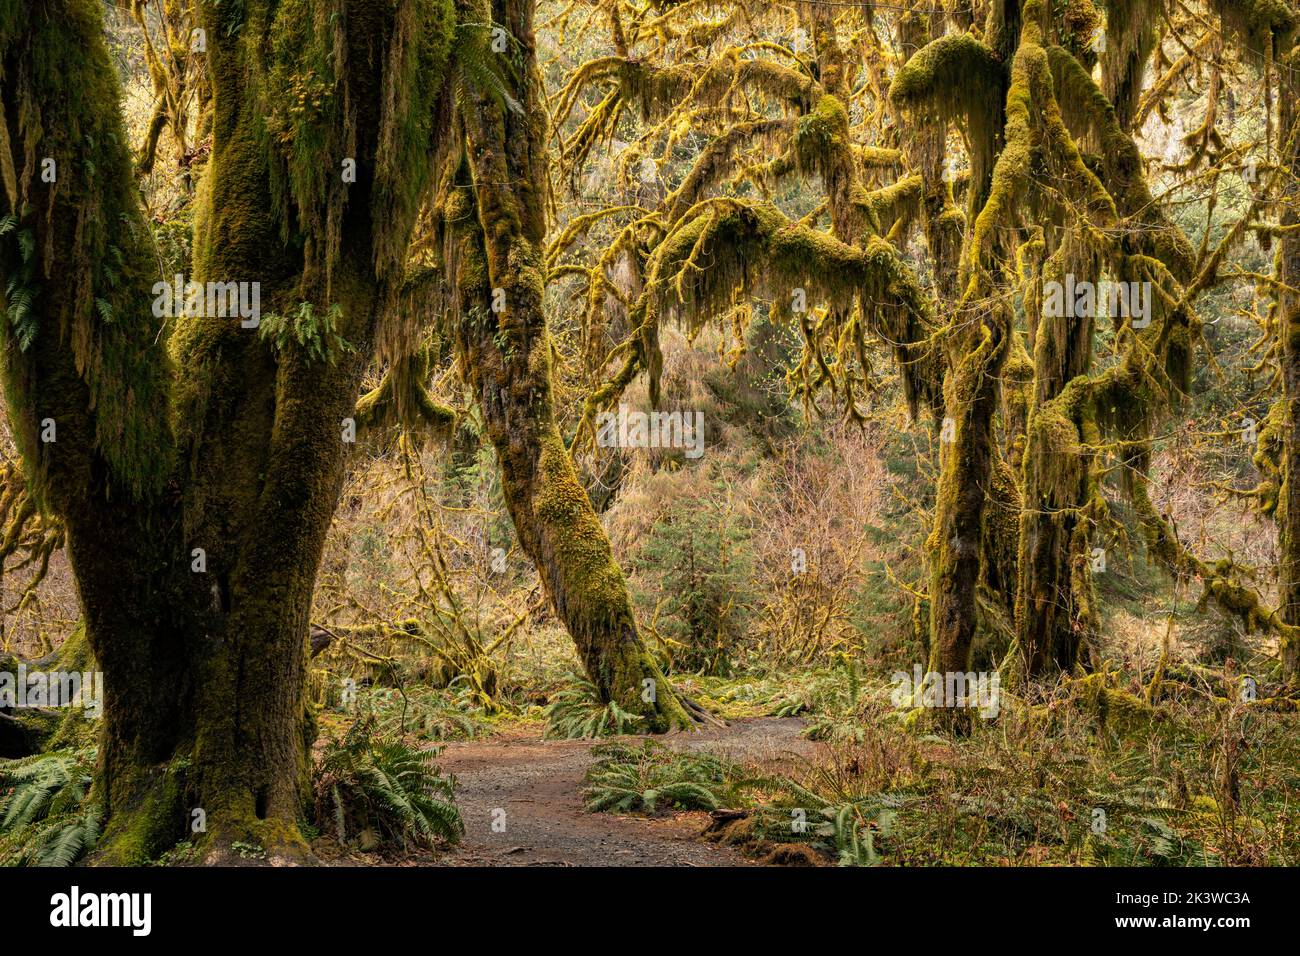 WA22097-00...WASHINGTON - Acero coperto di muschio nella Hall of Mosses, parte della foresta pluviale Hoh, nel Parco Nazionale Olimpico. Foto Stock